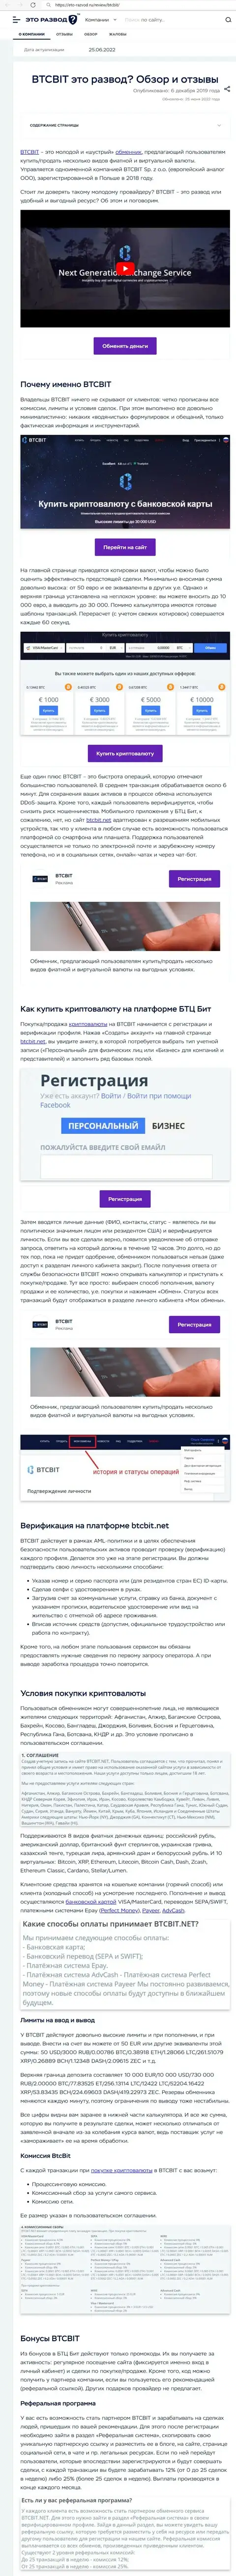 Обзор услуг и условия для работы онлайн-обменника БТЦБит в обзорной статье на сайте eto razvod ru